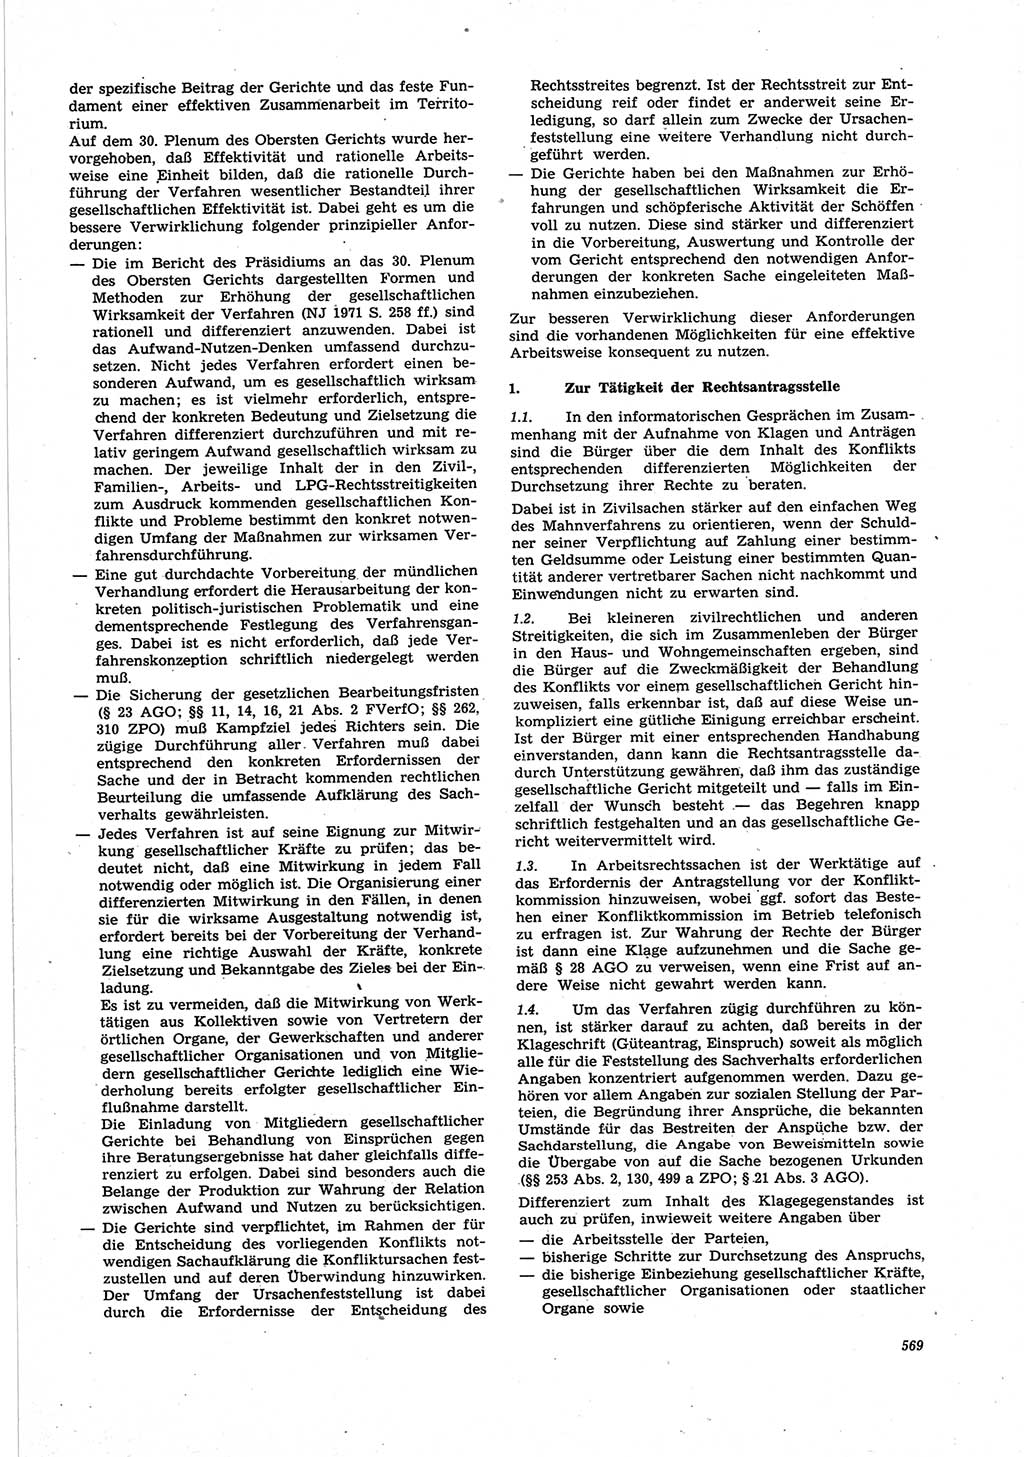 Neue Justiz (NJ), Zeitschrift für Recht und Rechtswissenschaft [Deutsche Demokratische Republik (DDR)], 25. Jahrgang 1971, Seite 569 (NJ DDR 1971, S. 569)